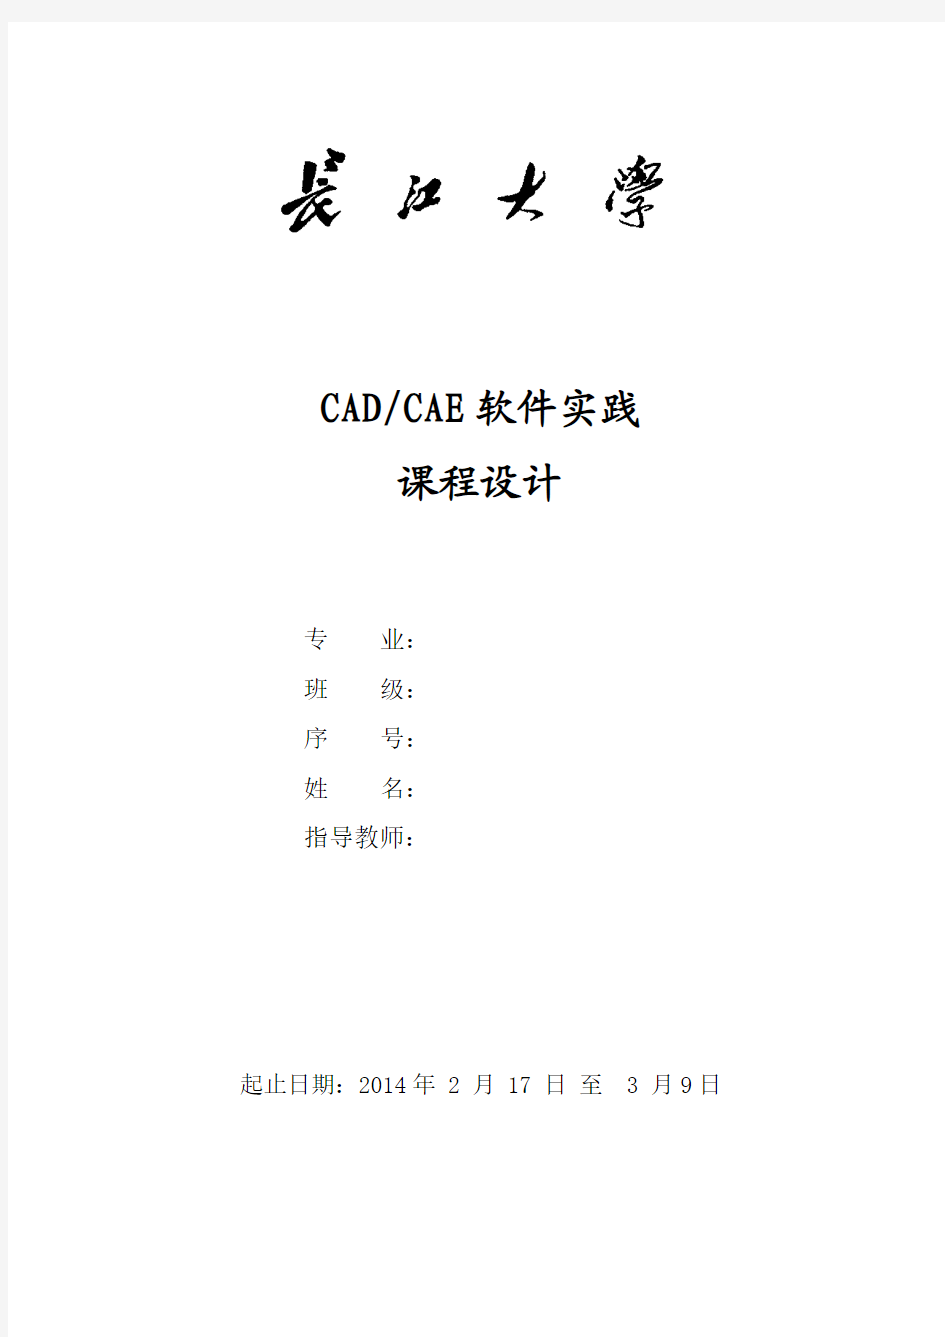 CADCAE-ansys课程设计-长江大学